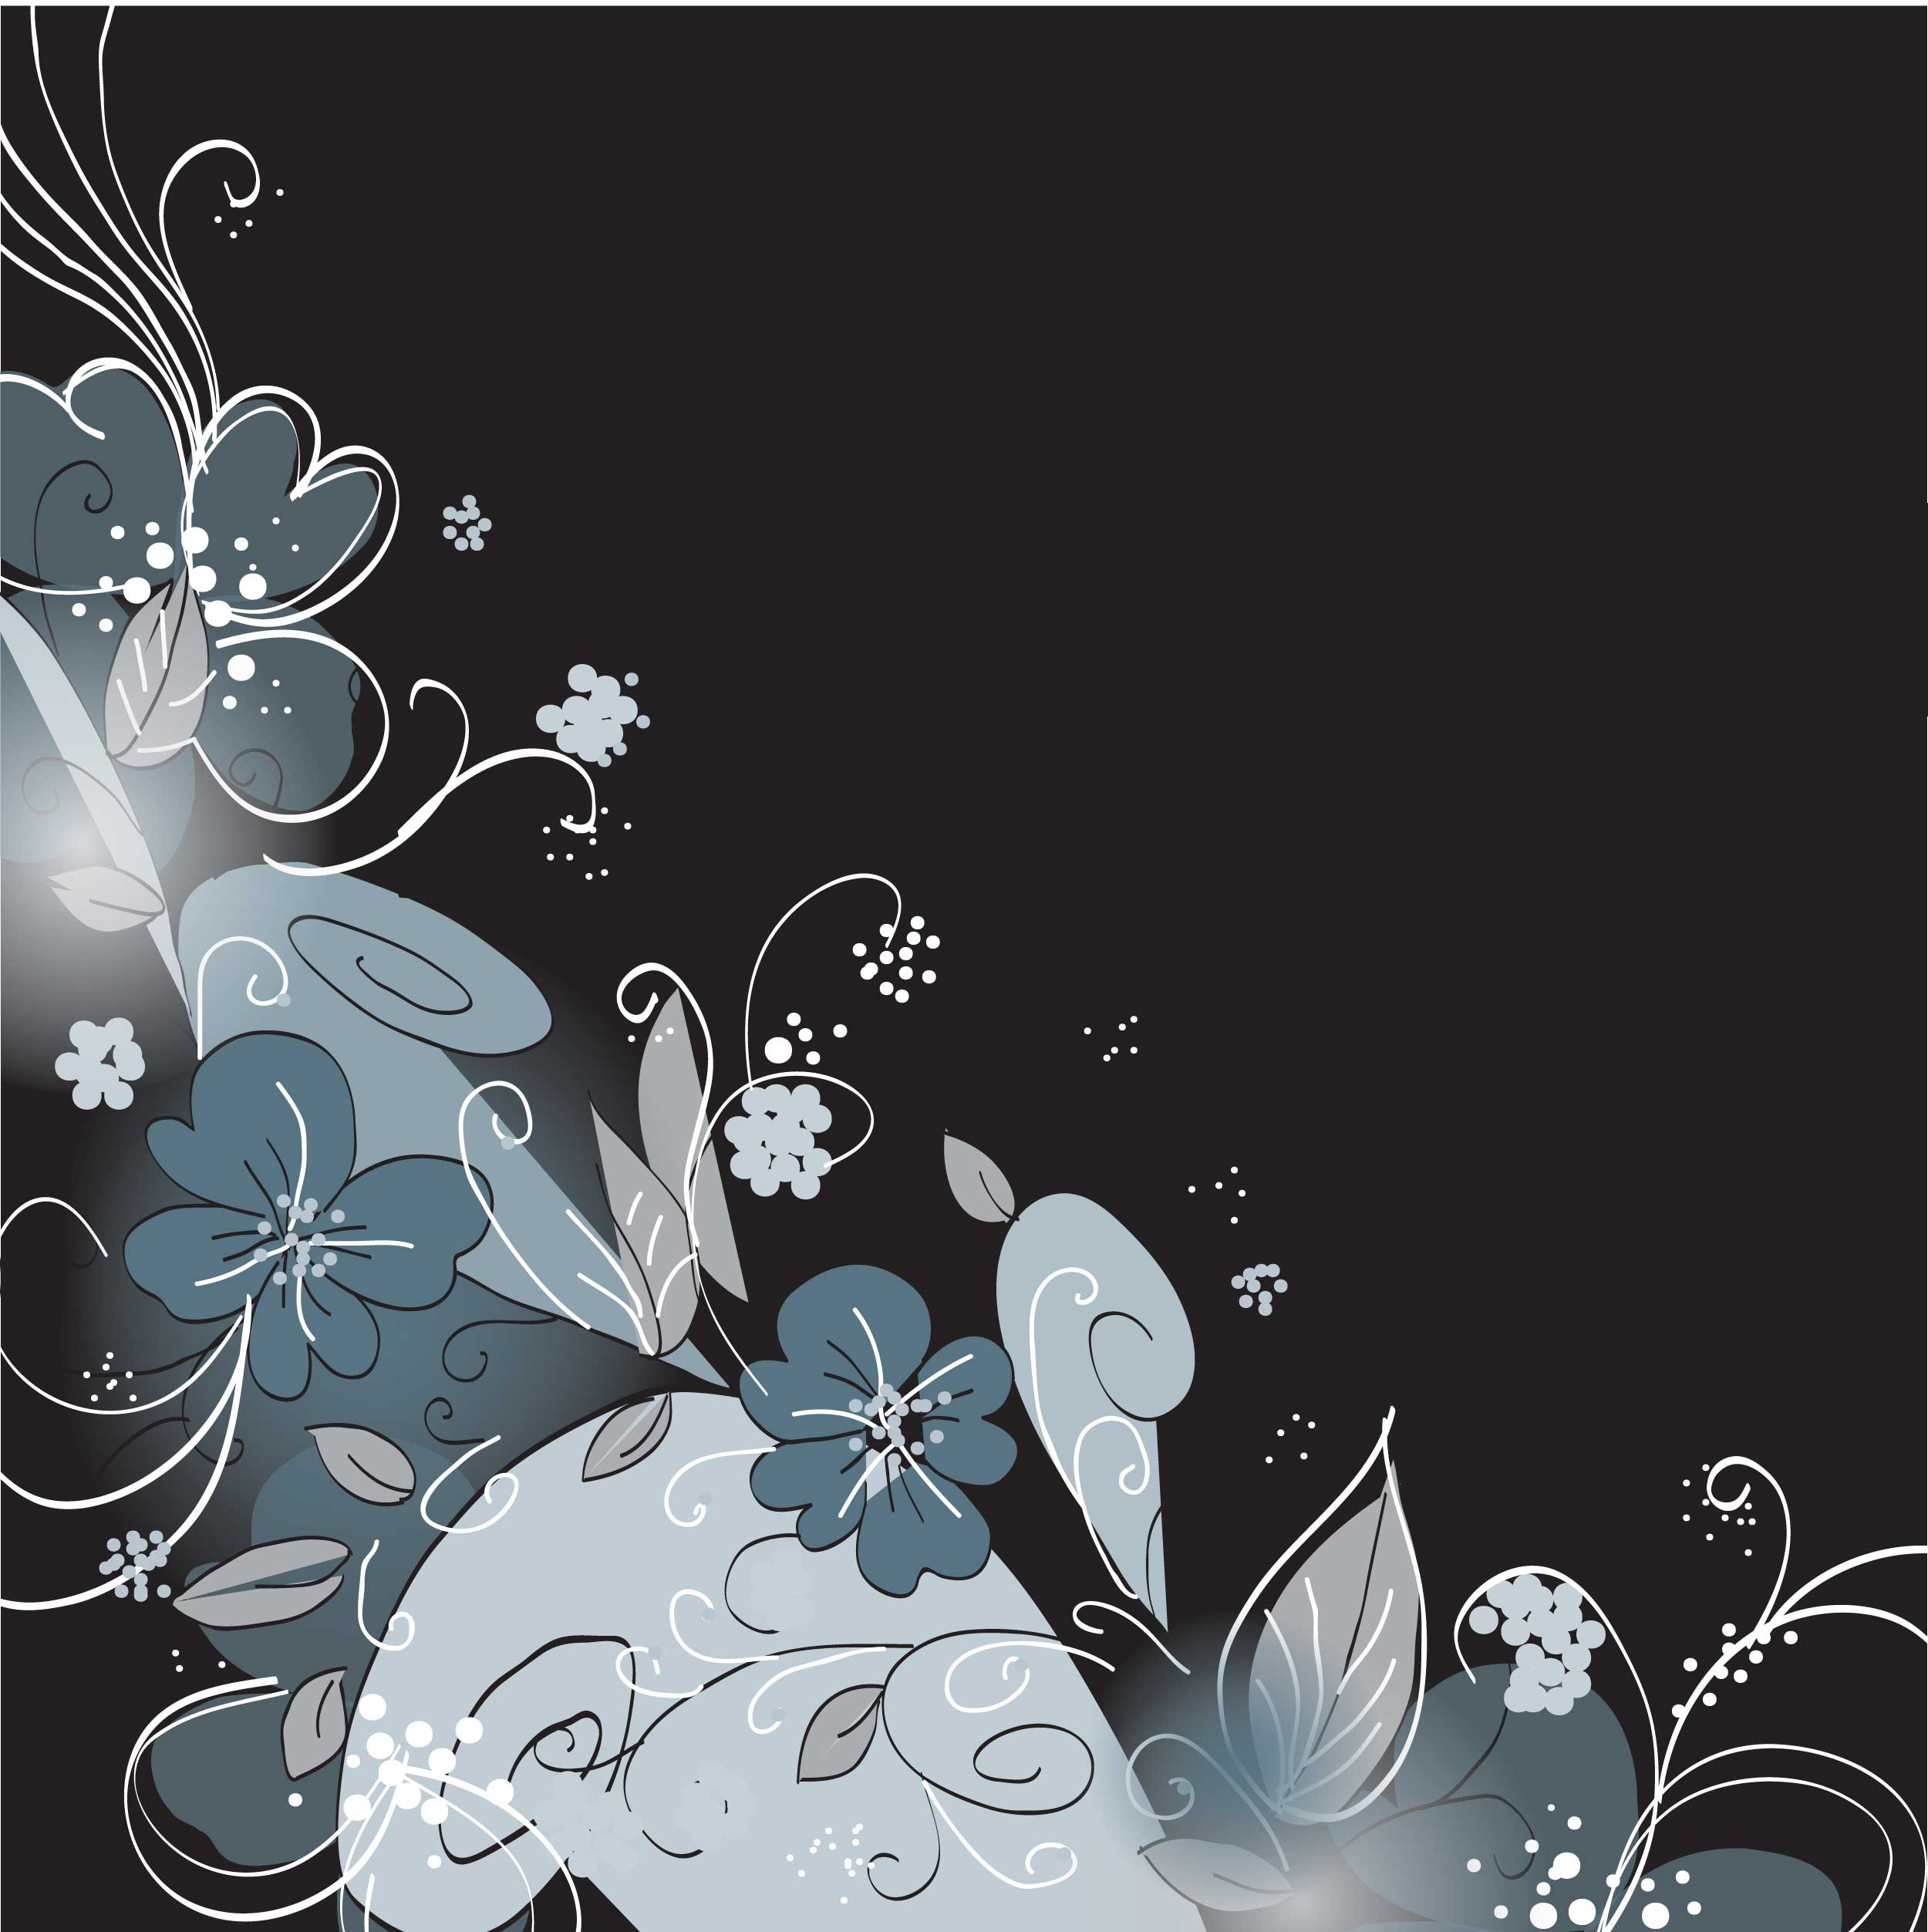 花のイラスト フリー素材 壁紙 背景no 282 シック クール ダーク